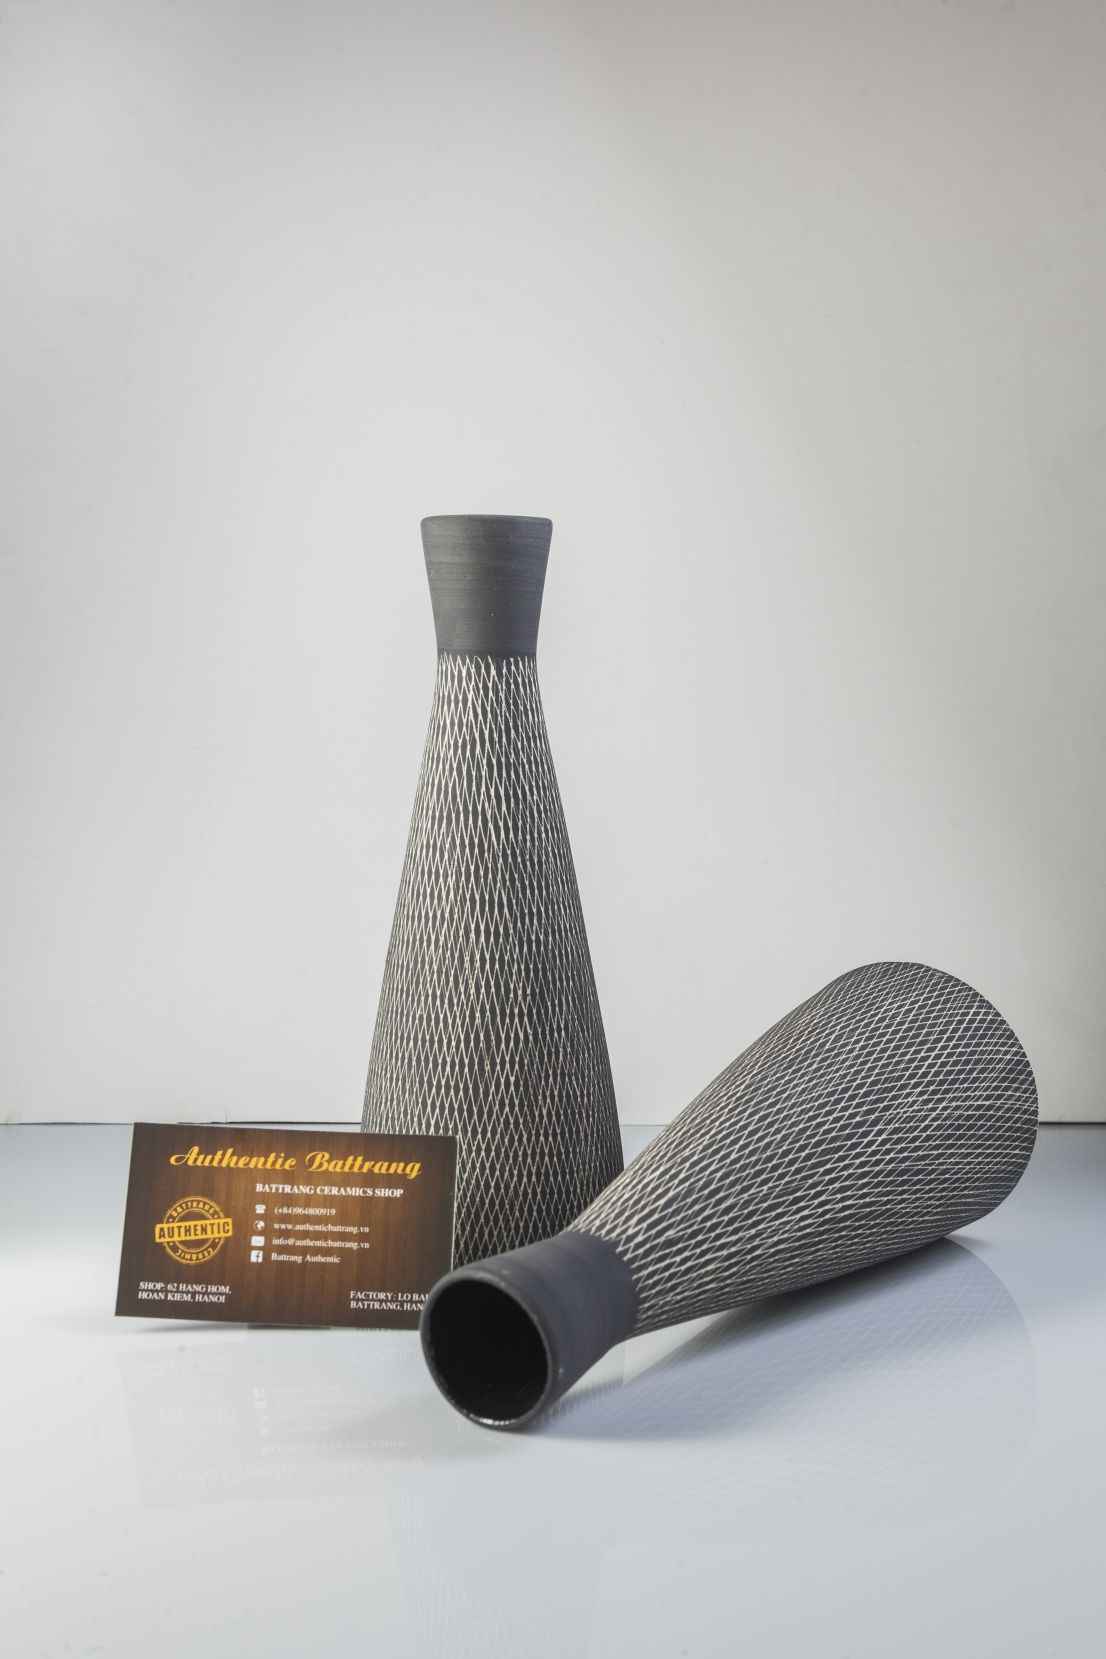 Ceramic bottle vase/bình cắm hoa, bình trang trí phong cách châu âu sản xuất tại xưởng Authentic bat trang